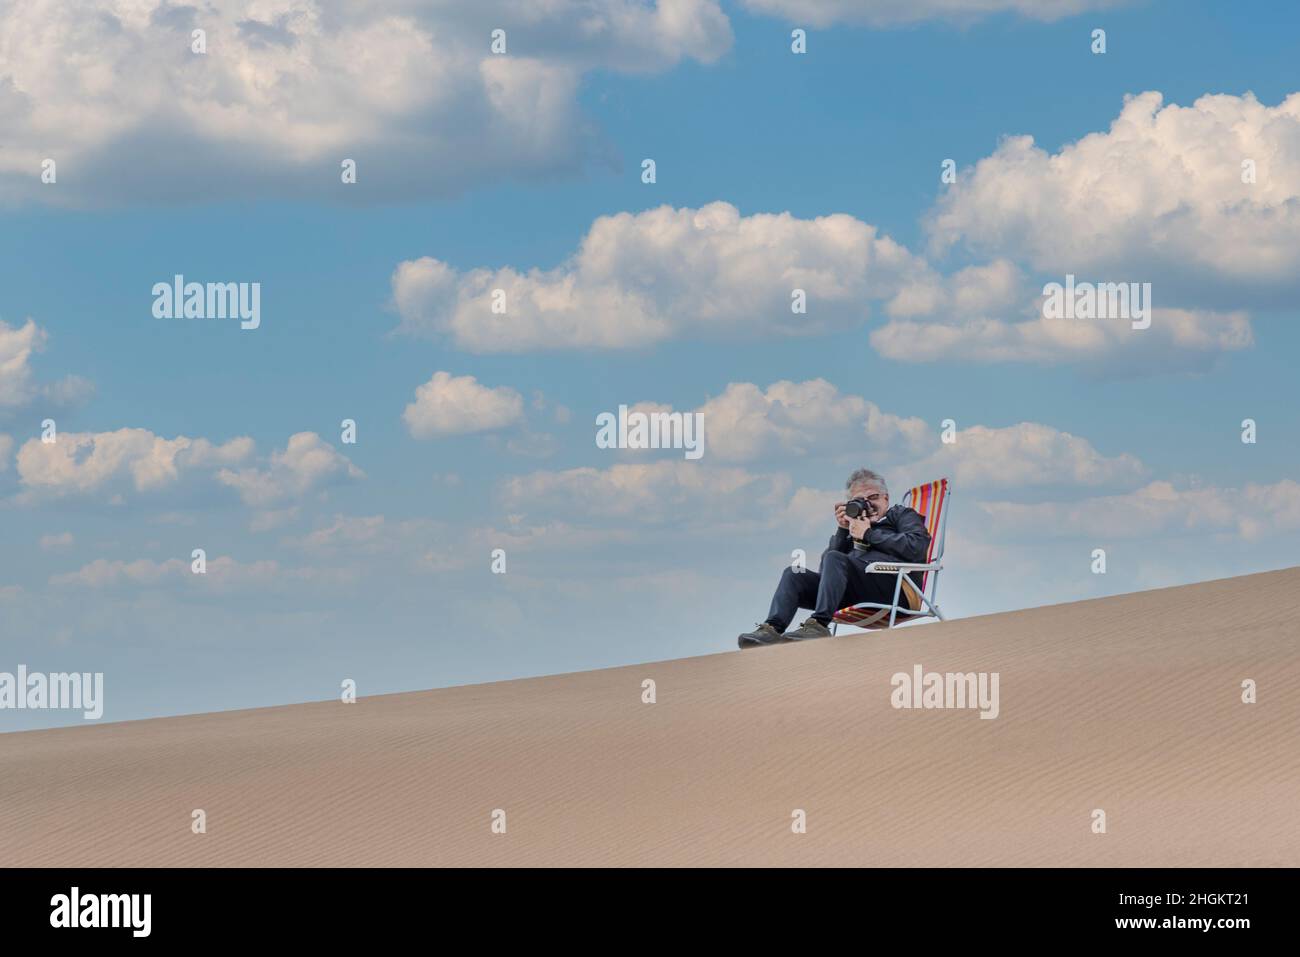 Vista di un maschio adulto seduto su una sedia da spiaggia nella parte superiore di una duna scattando una foto con la fotocamera. Foto Stock